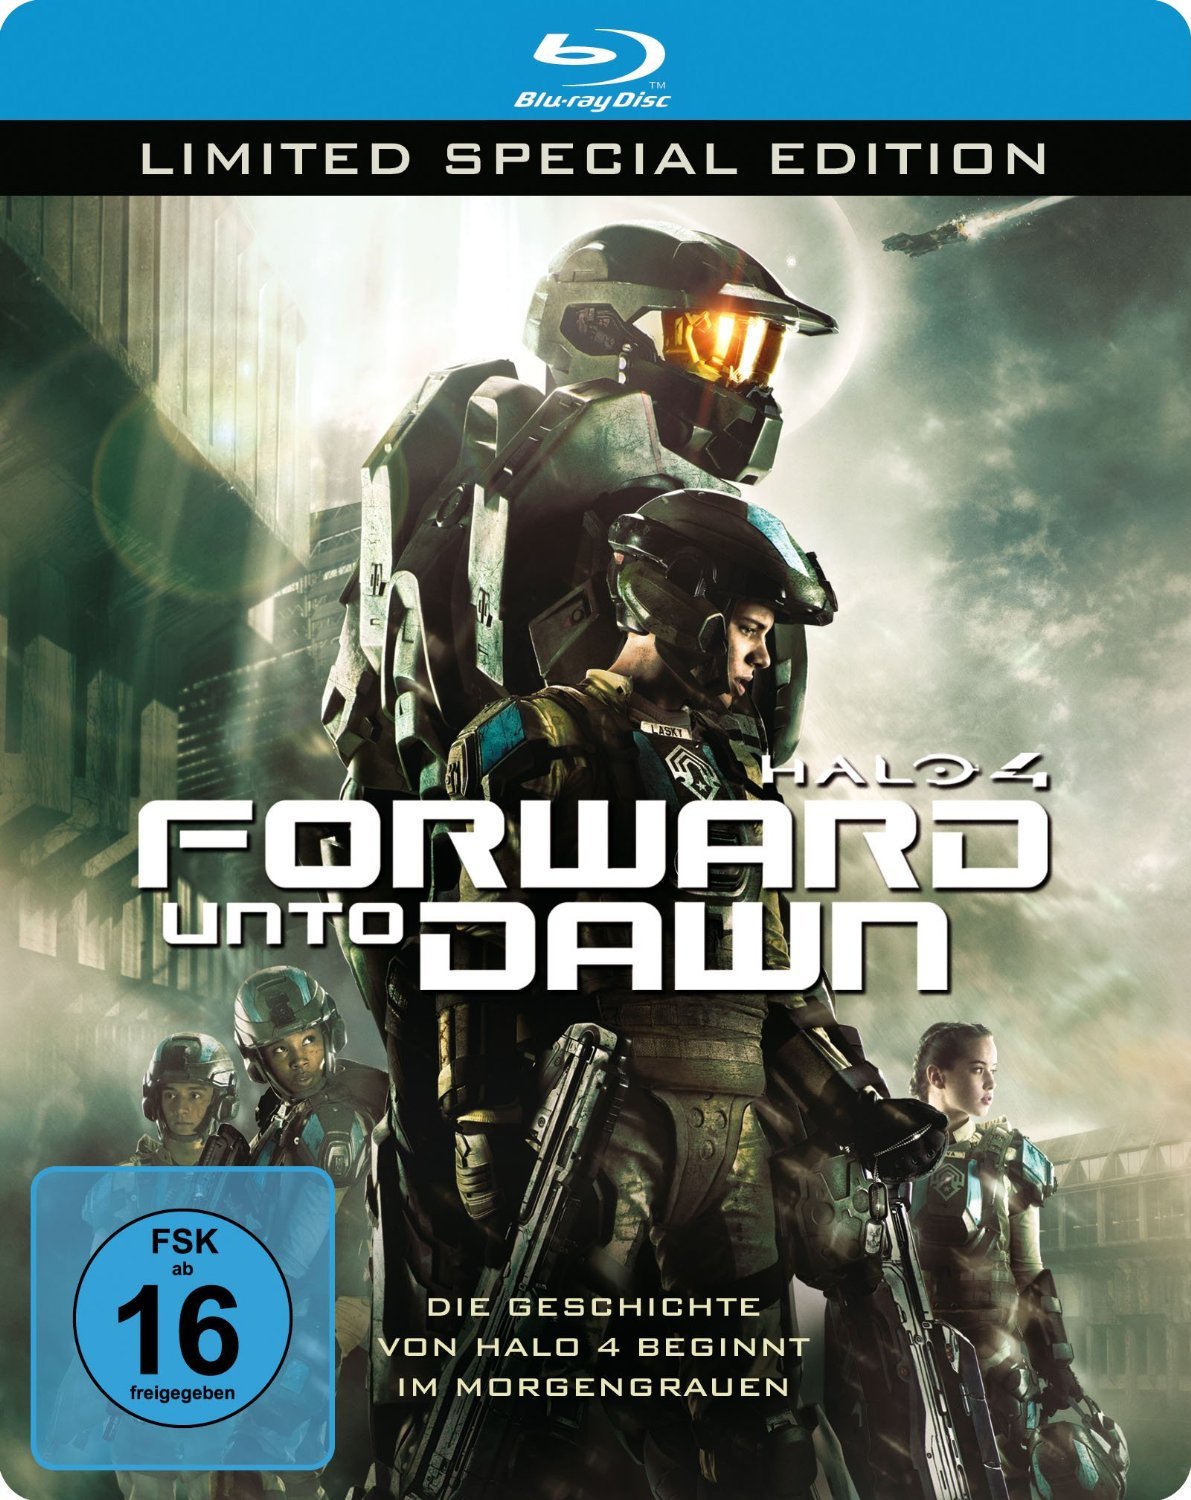 Halo 4: Forward Unto Dawn #25